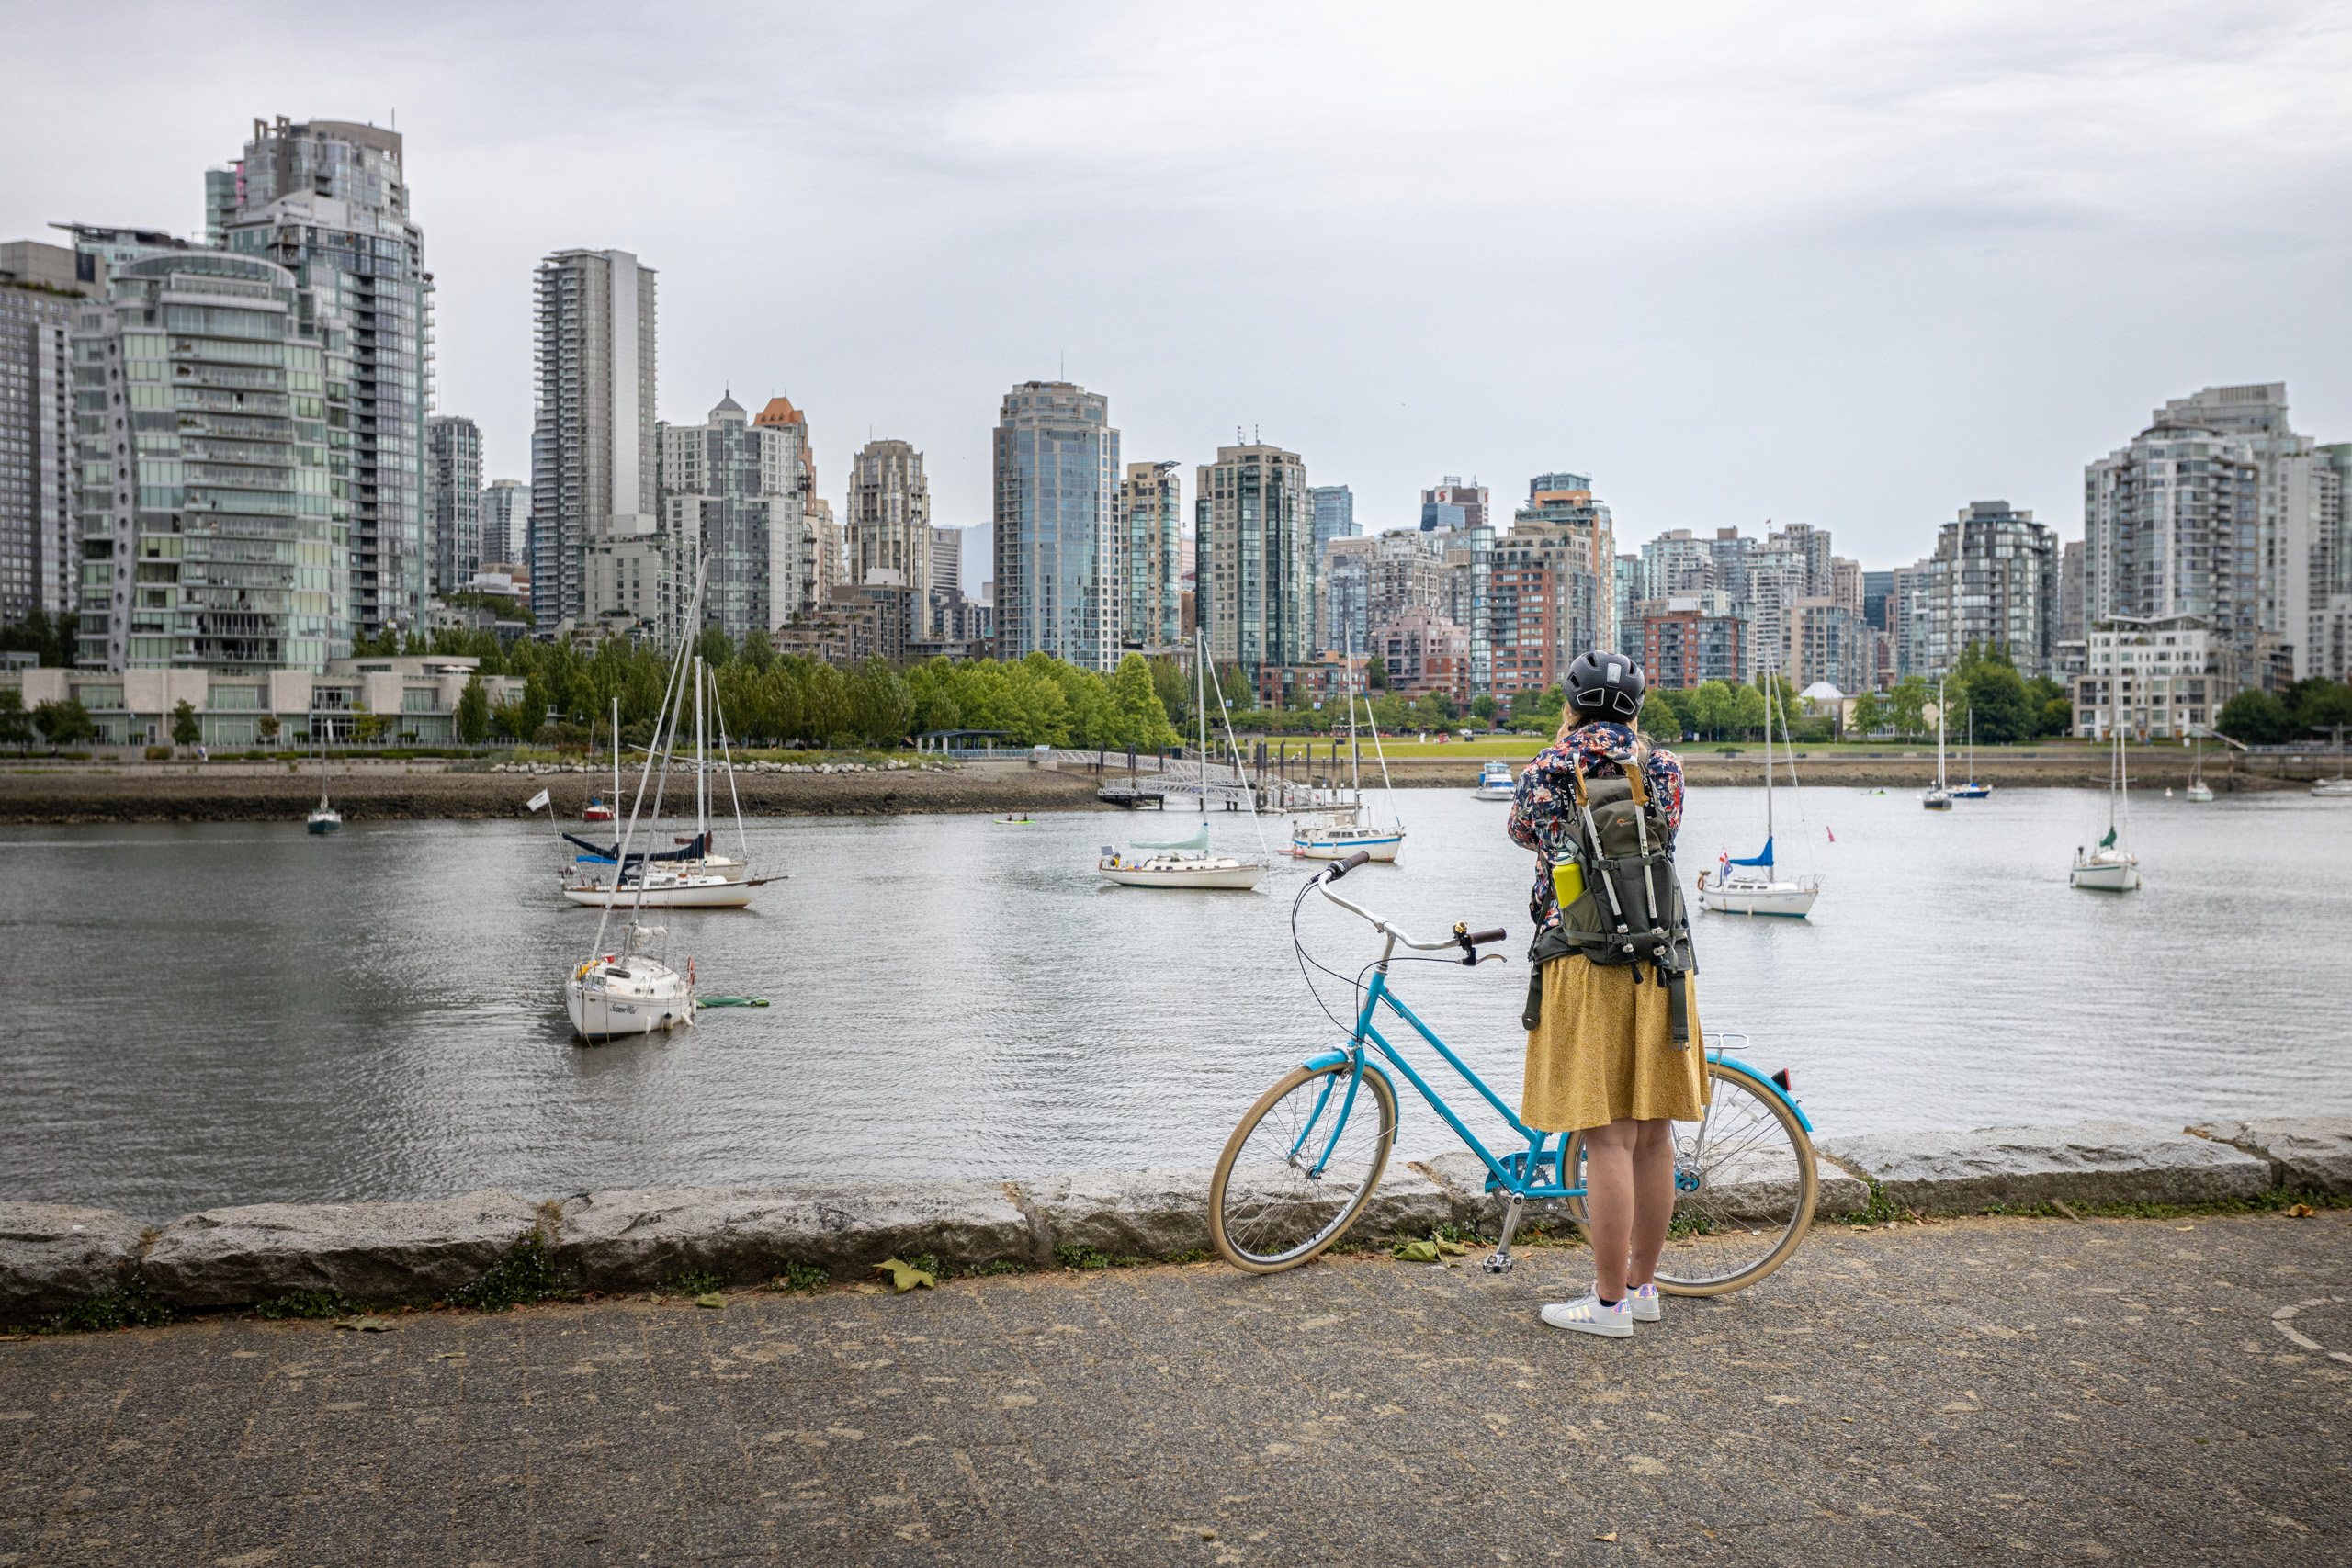 Manouk in een gele jurk en bloemenjas voor een blauwe fiets terwijl ze langs de waterkant een foto maakt van de skyline van Vancouver tijdens een camperreis door Canada